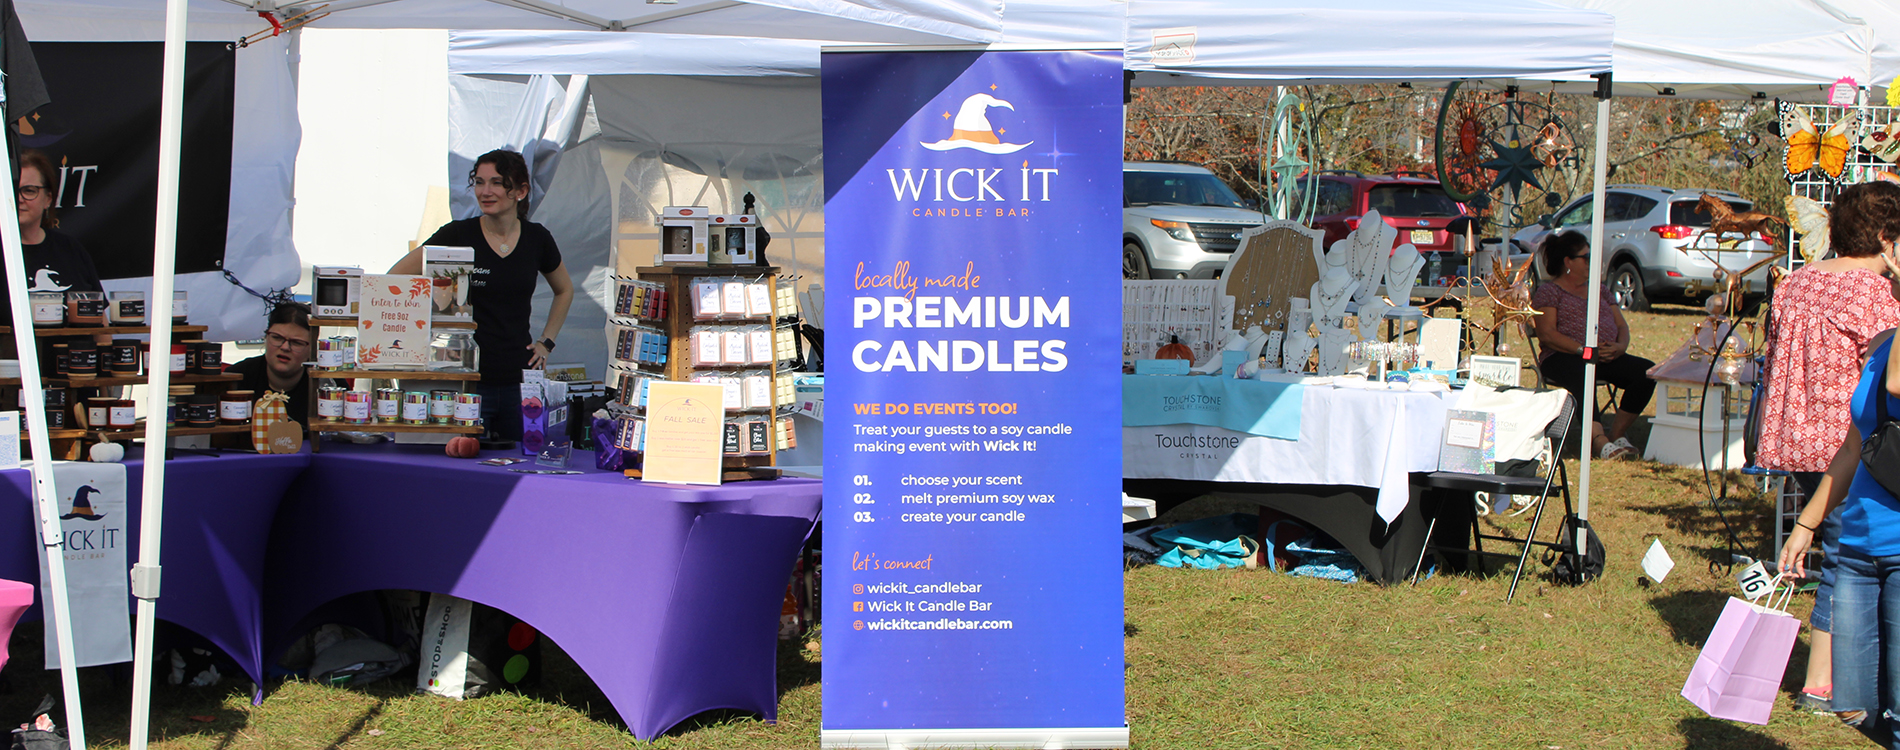 Wick It Candle Bar Vendor Events